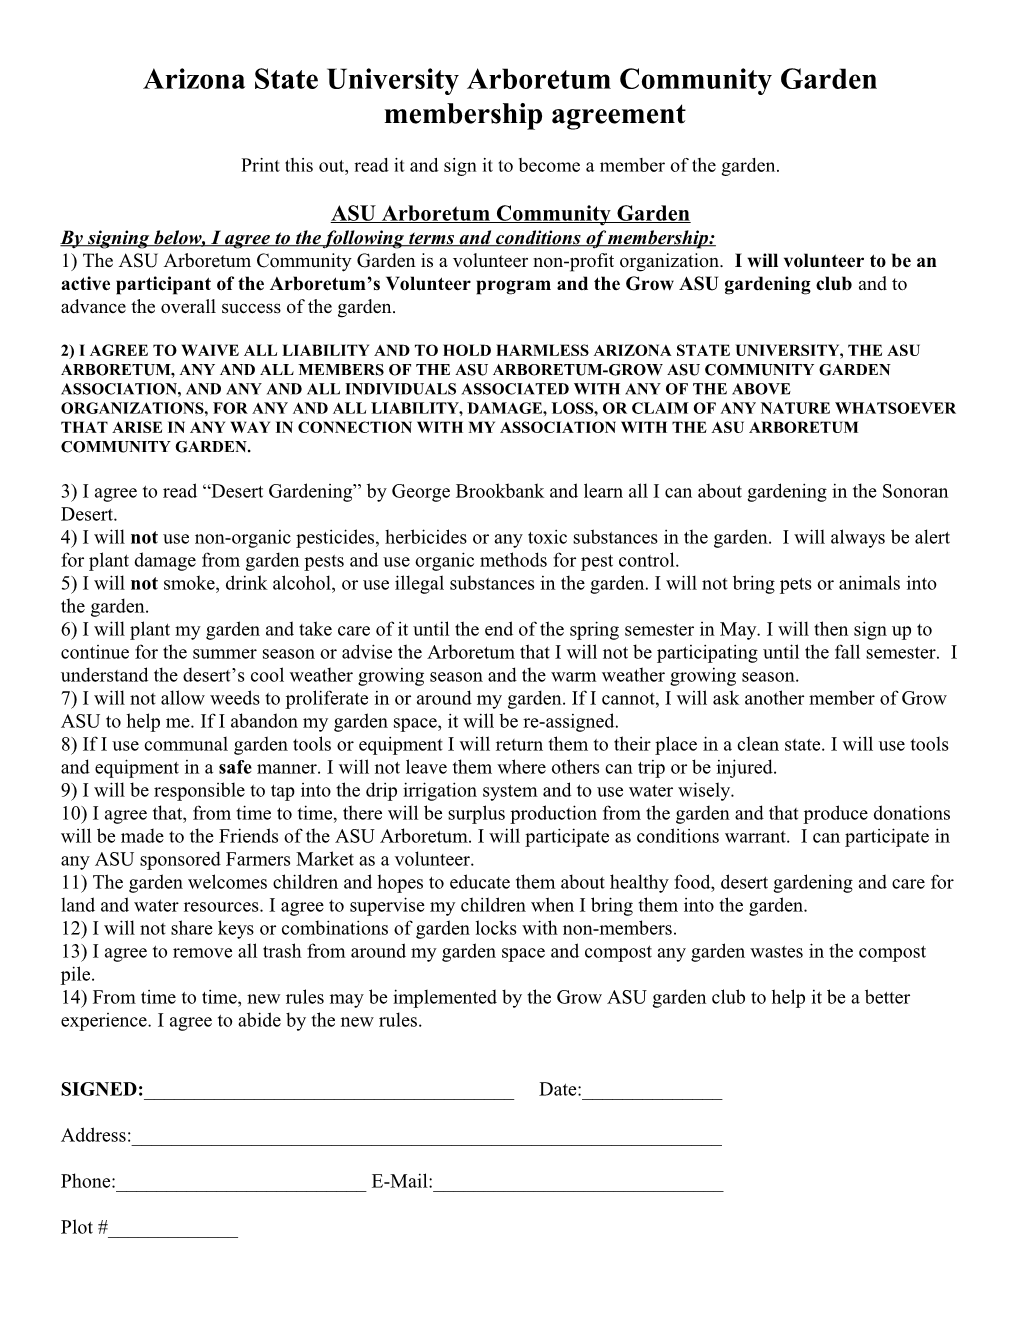 Arizona State University Arboretum Community Garden Membership Agreement